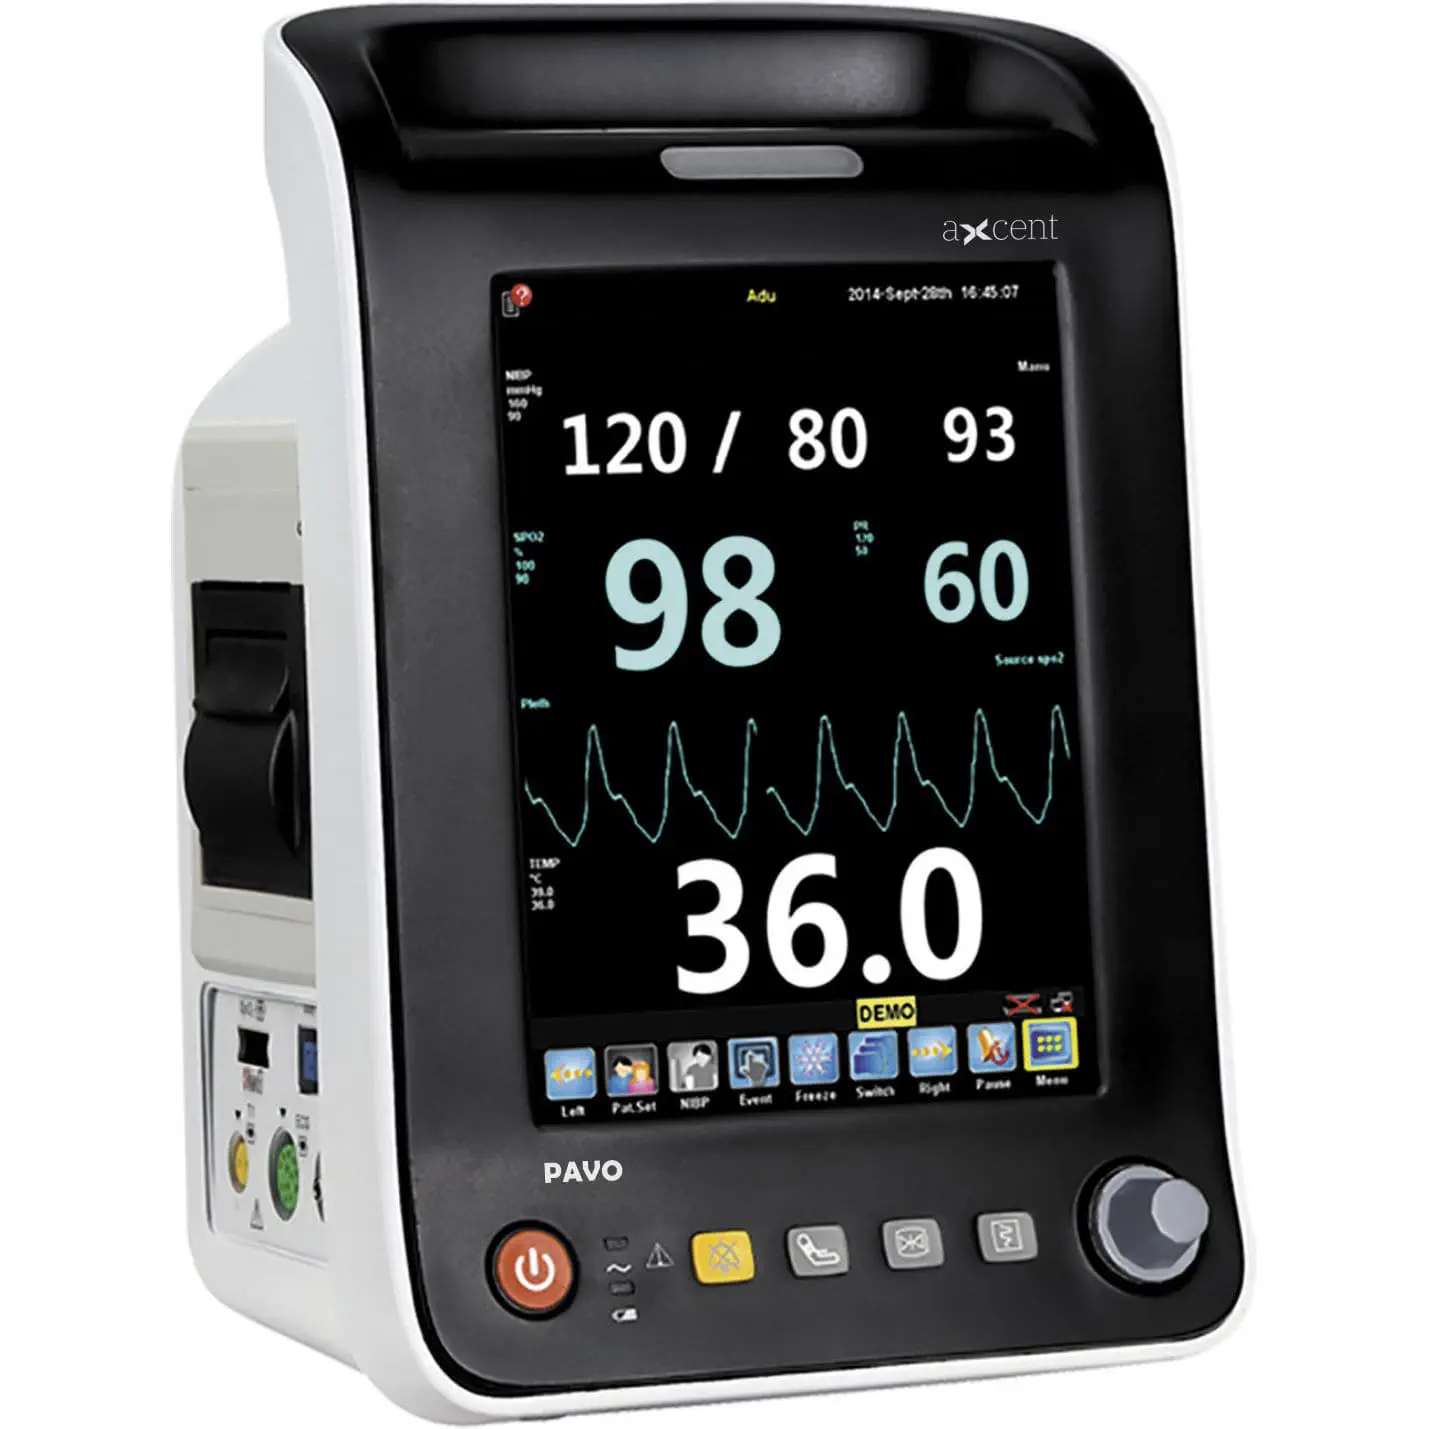 เครื่องติดตามสัญญาณชีพ  Portable vital signs monitor PAVO  aXcent medical